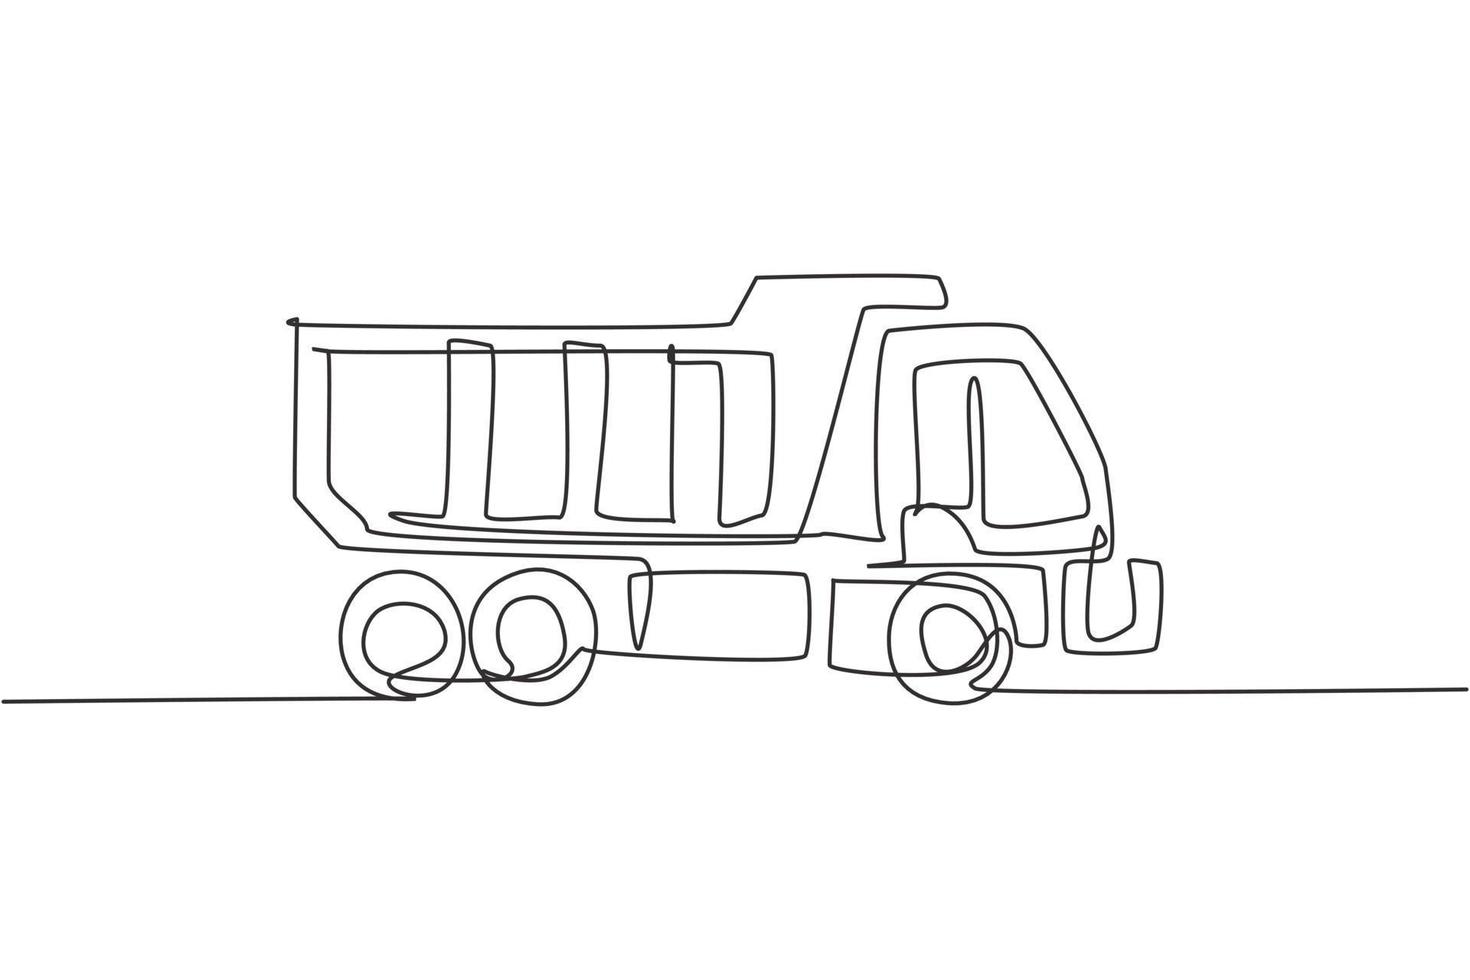 un dessin au trait continu d'un long camion pour la livraison logistique de fret, véhicule d'affaires. concept d'équipement de camions de transport lourd. illustration graphique de vecteur de conception de dessin de ligne unique dynamique